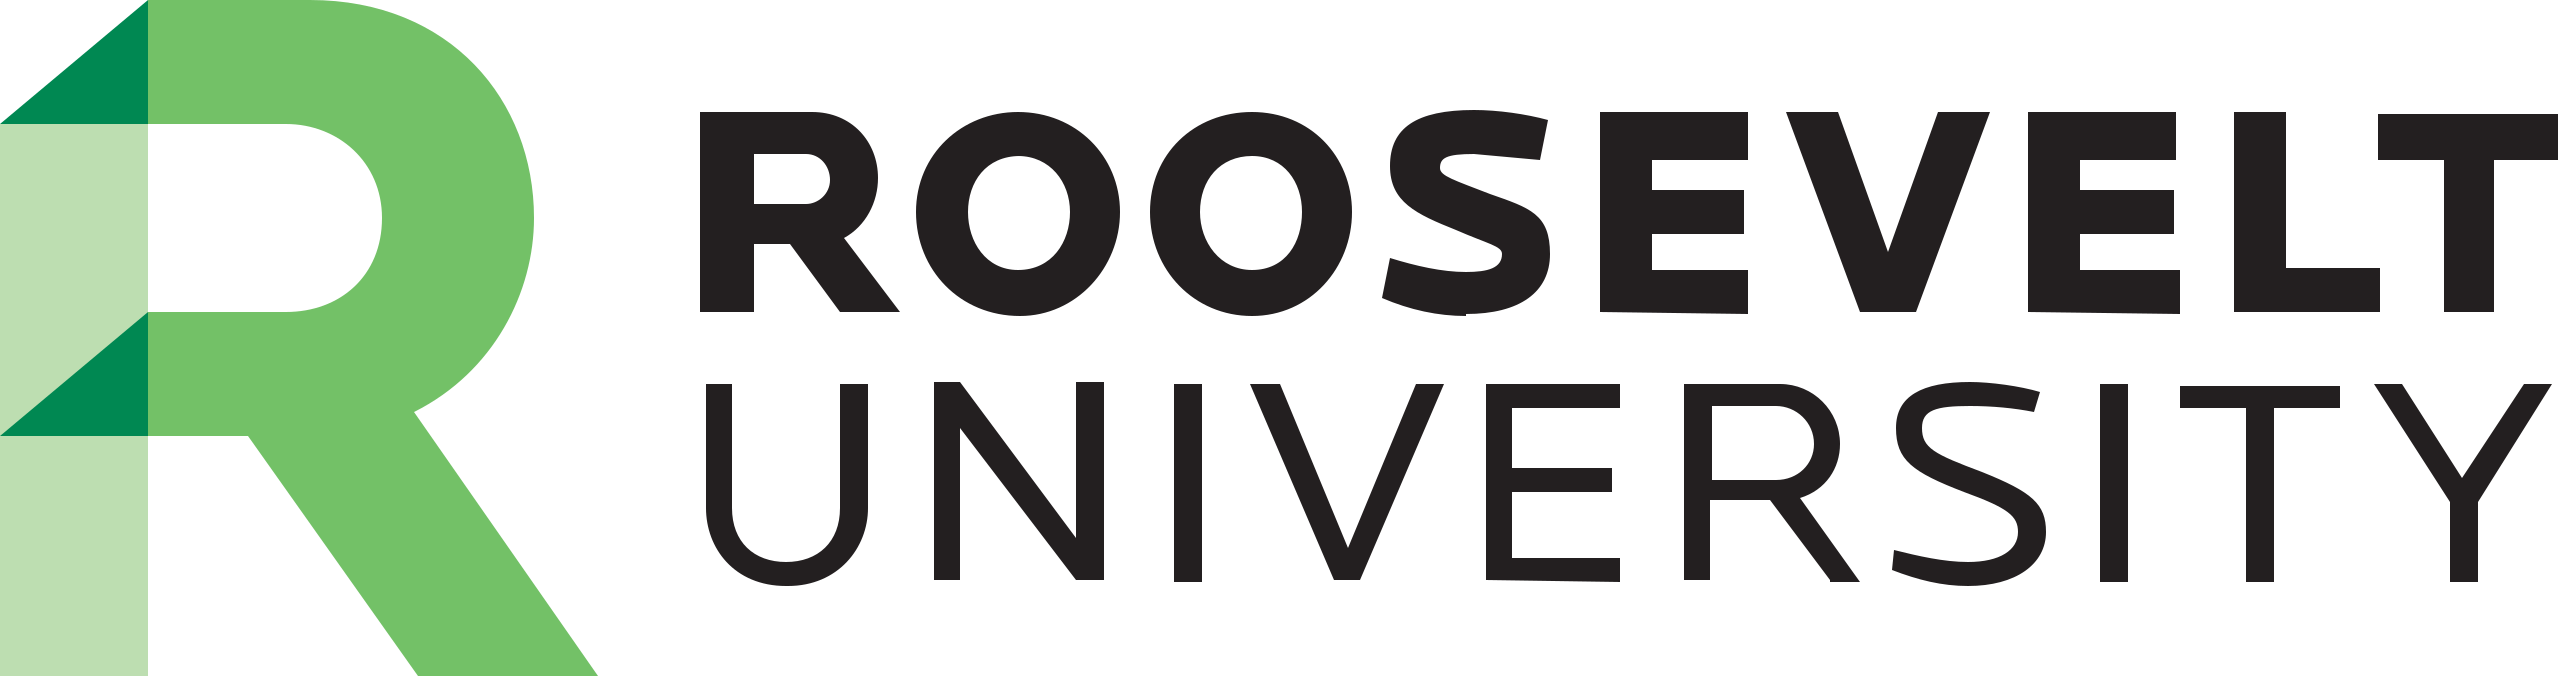 Logo for Roosevelt University